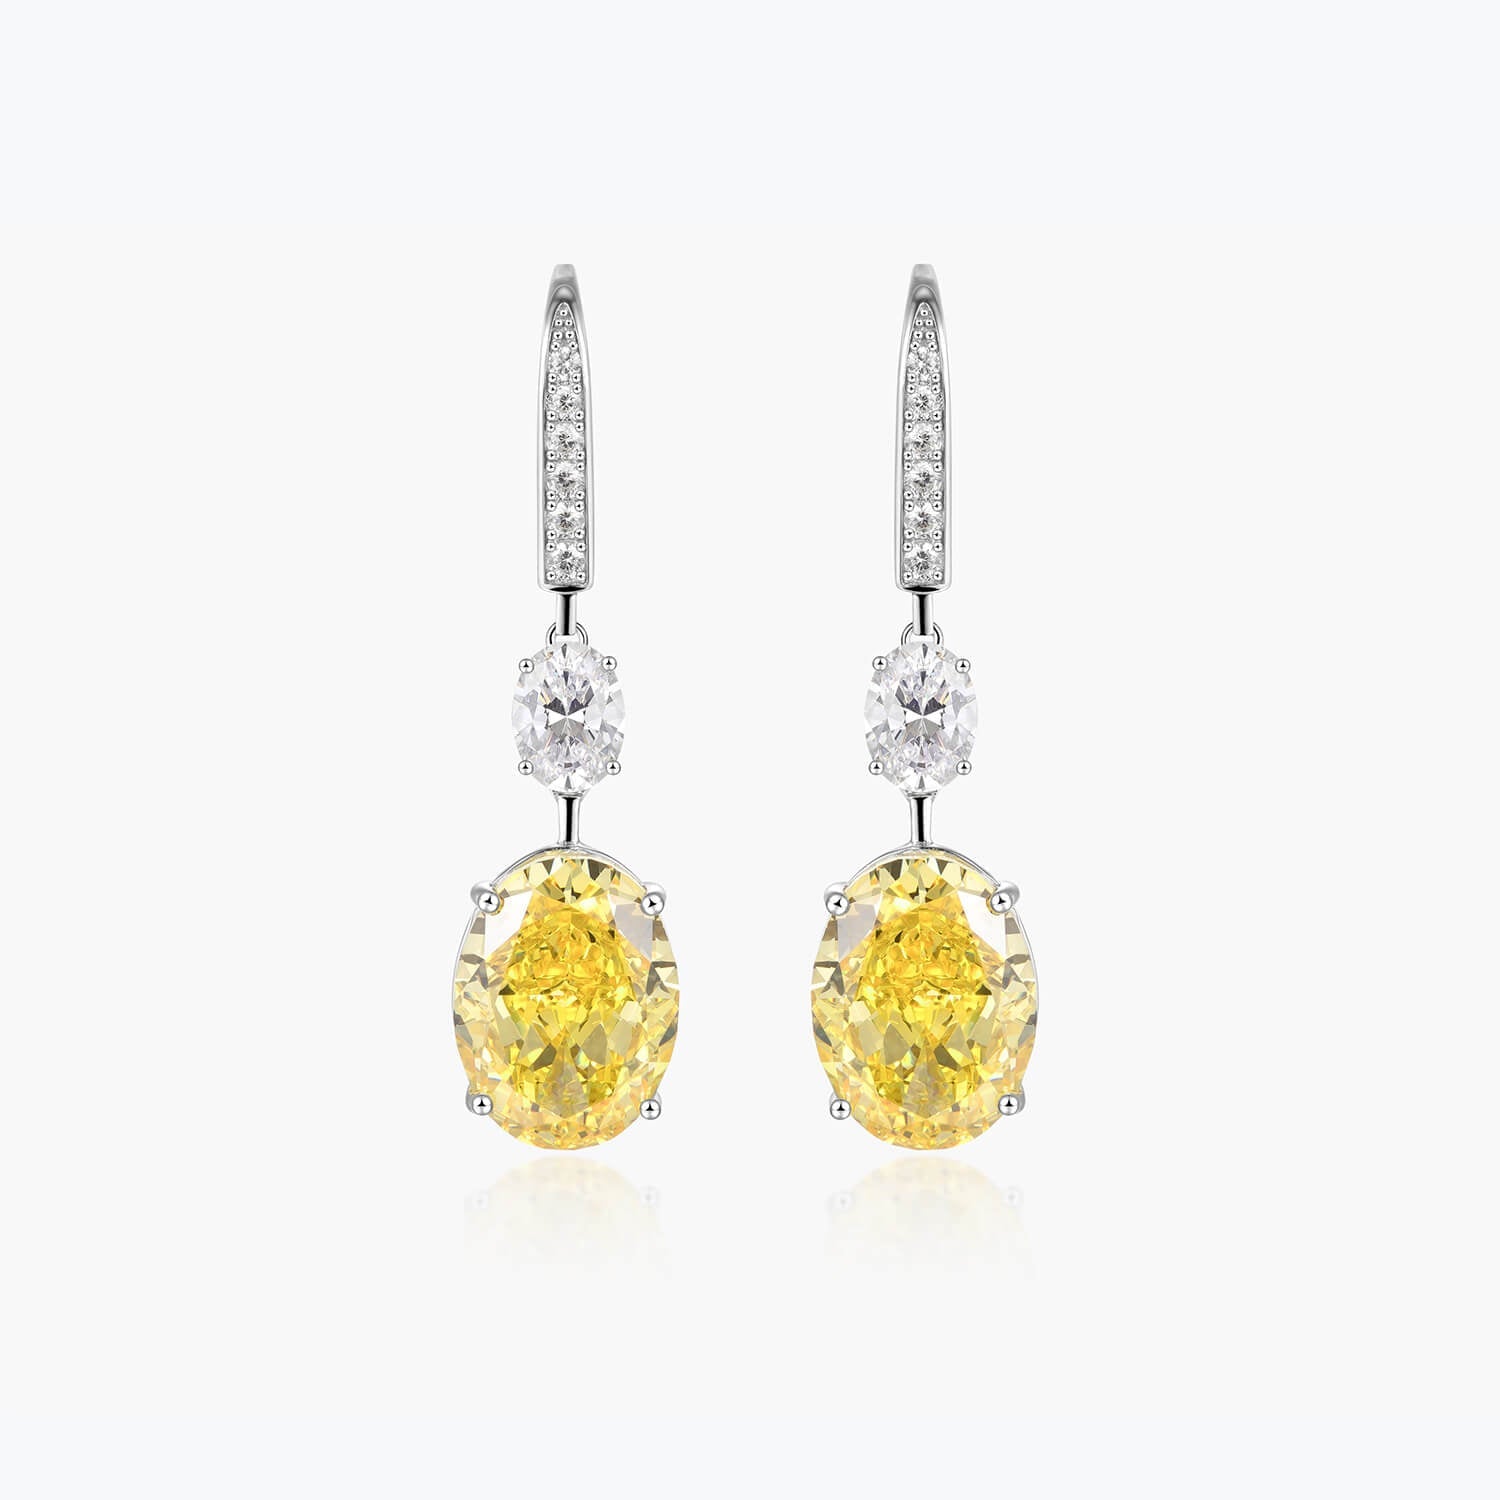 Yellow &White Oval Drop Earrings - dissoojewelry